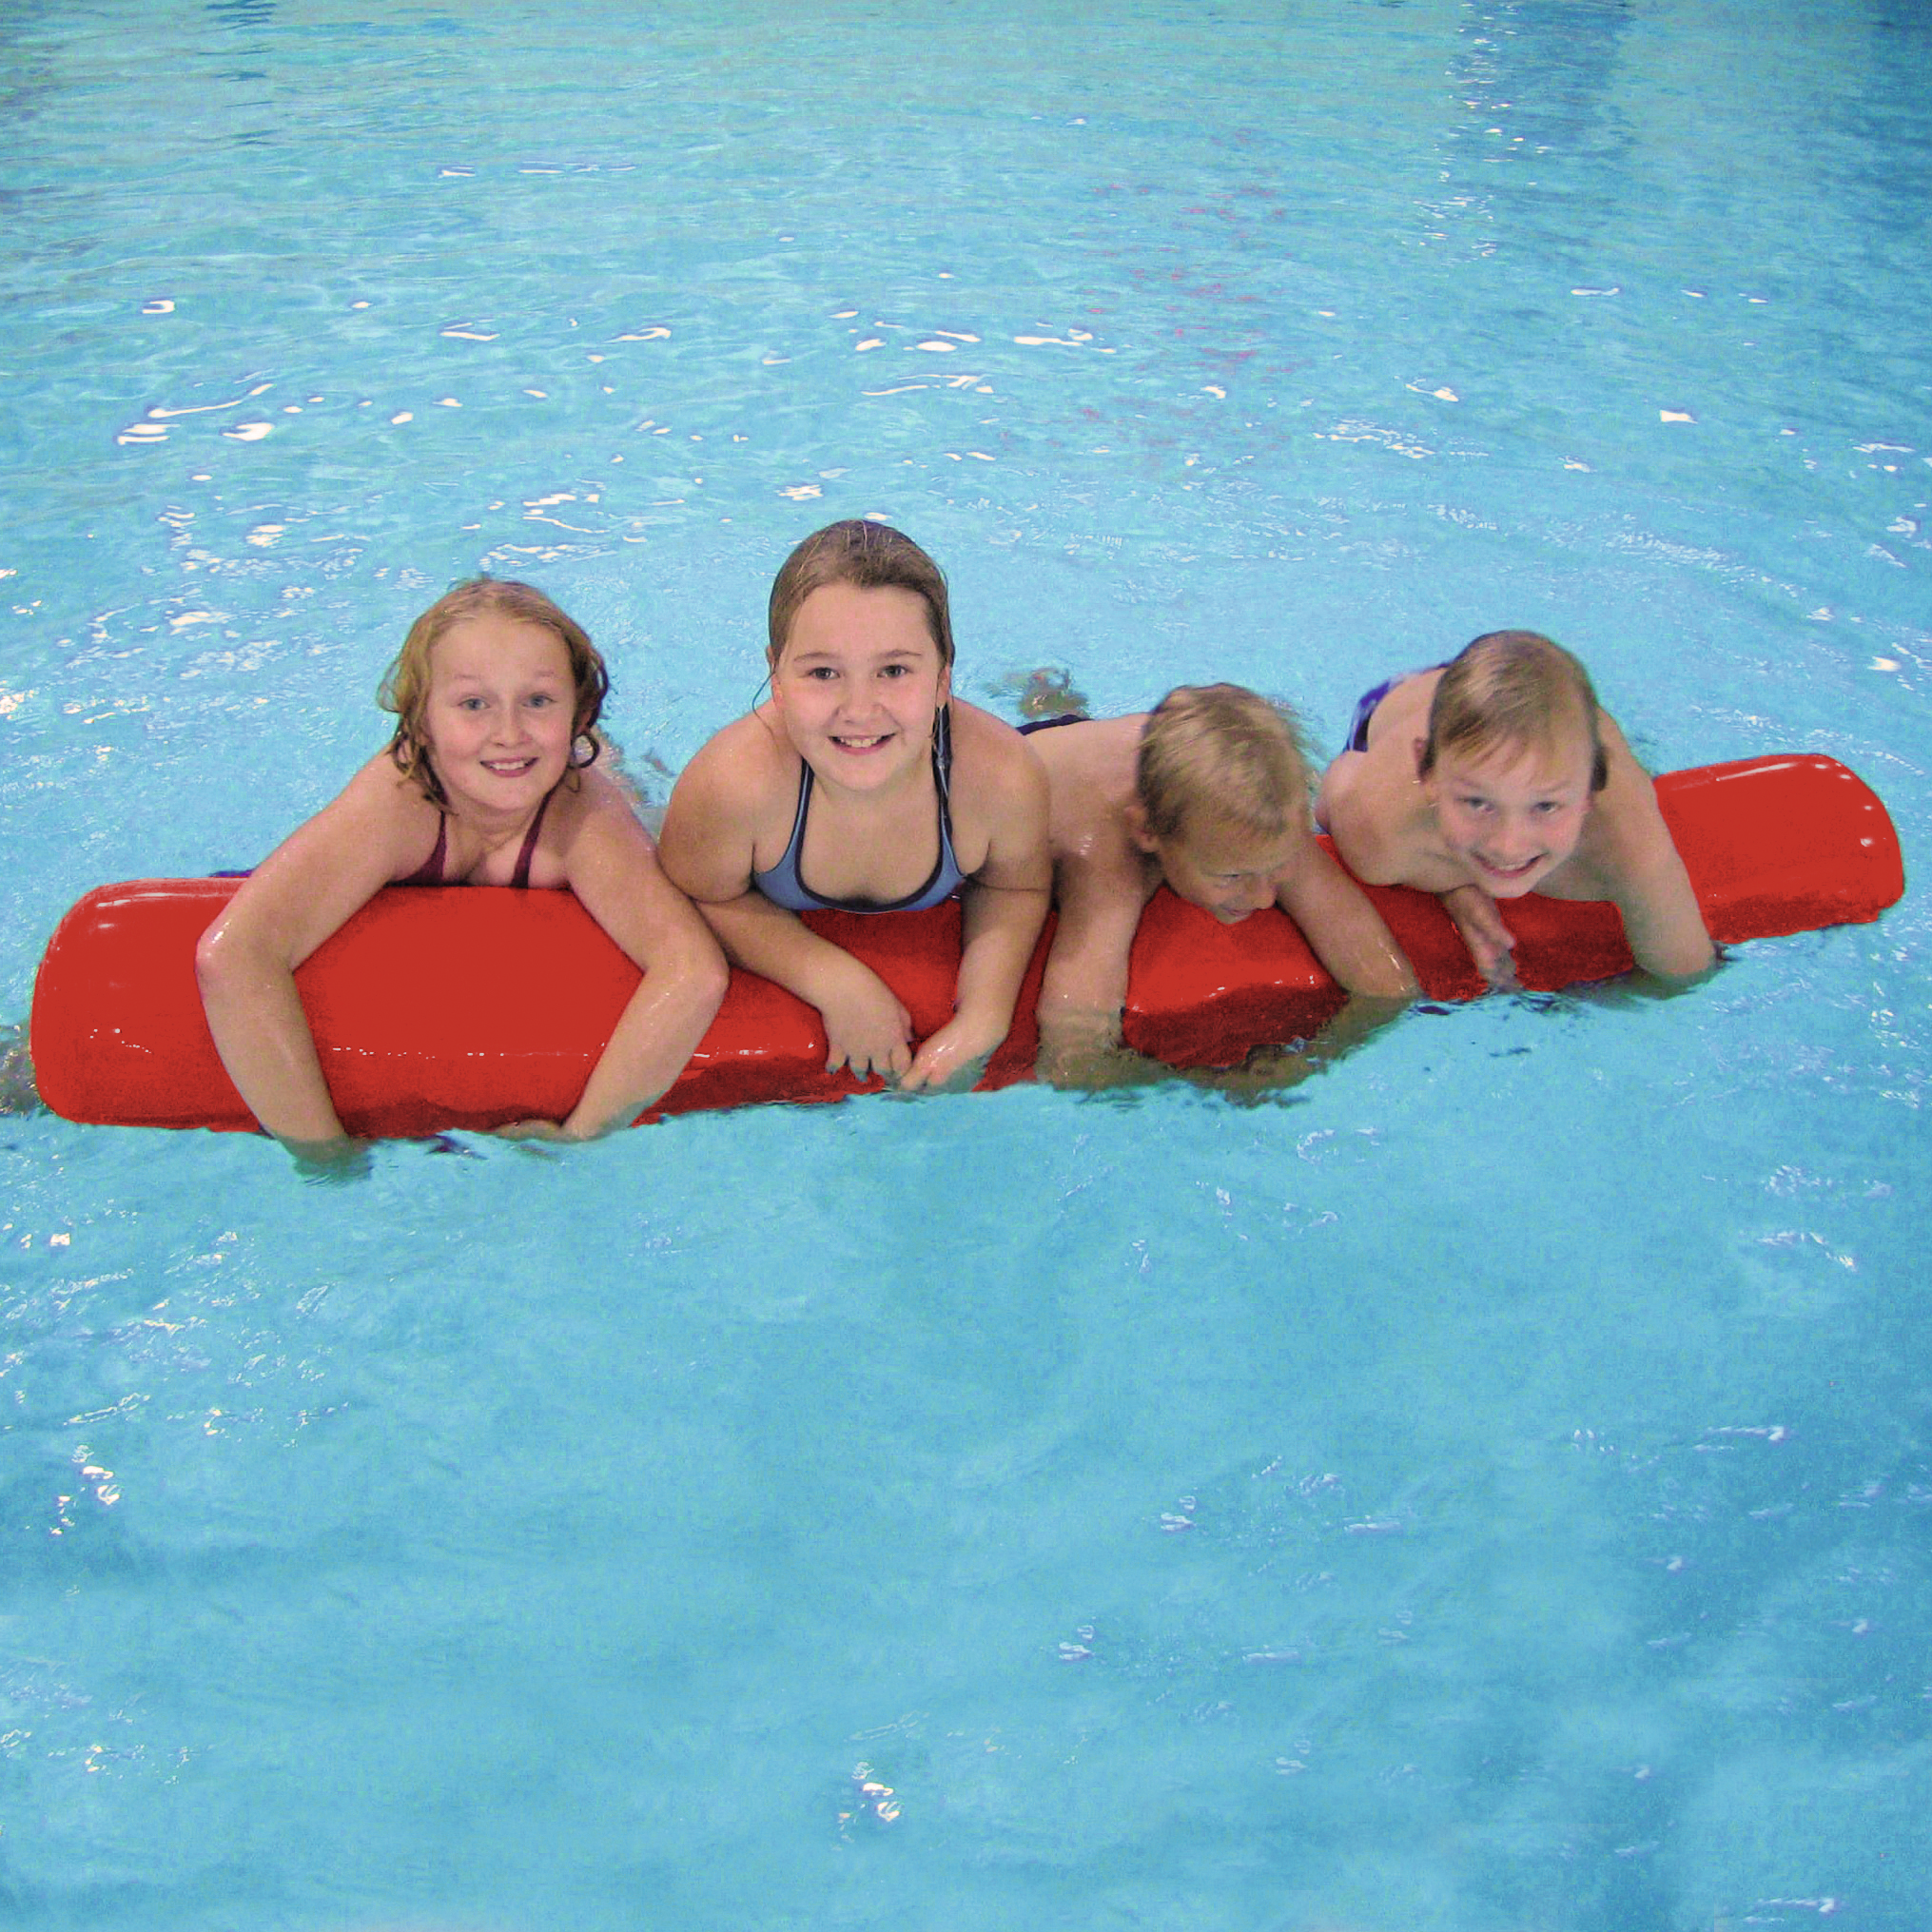 Staffelspiele im Wasser - Ideen für den Schwimmunterricht